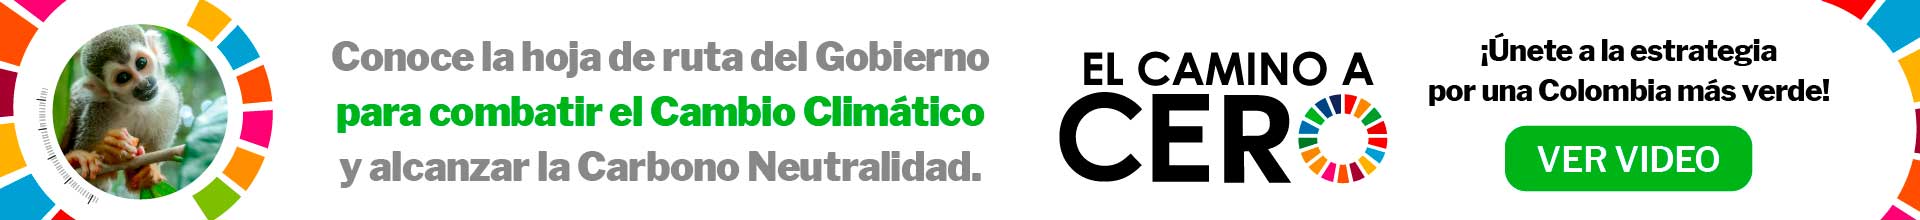 Banner de la campaña "Camino a cero" para conocer la ruta del Gobierno para combatir el cambio climático y alcanzar la Carbono Neutralidad. Invitación a hacer clic para dirigirte al enlace y unirte a la estrategia por una Colombia más verde